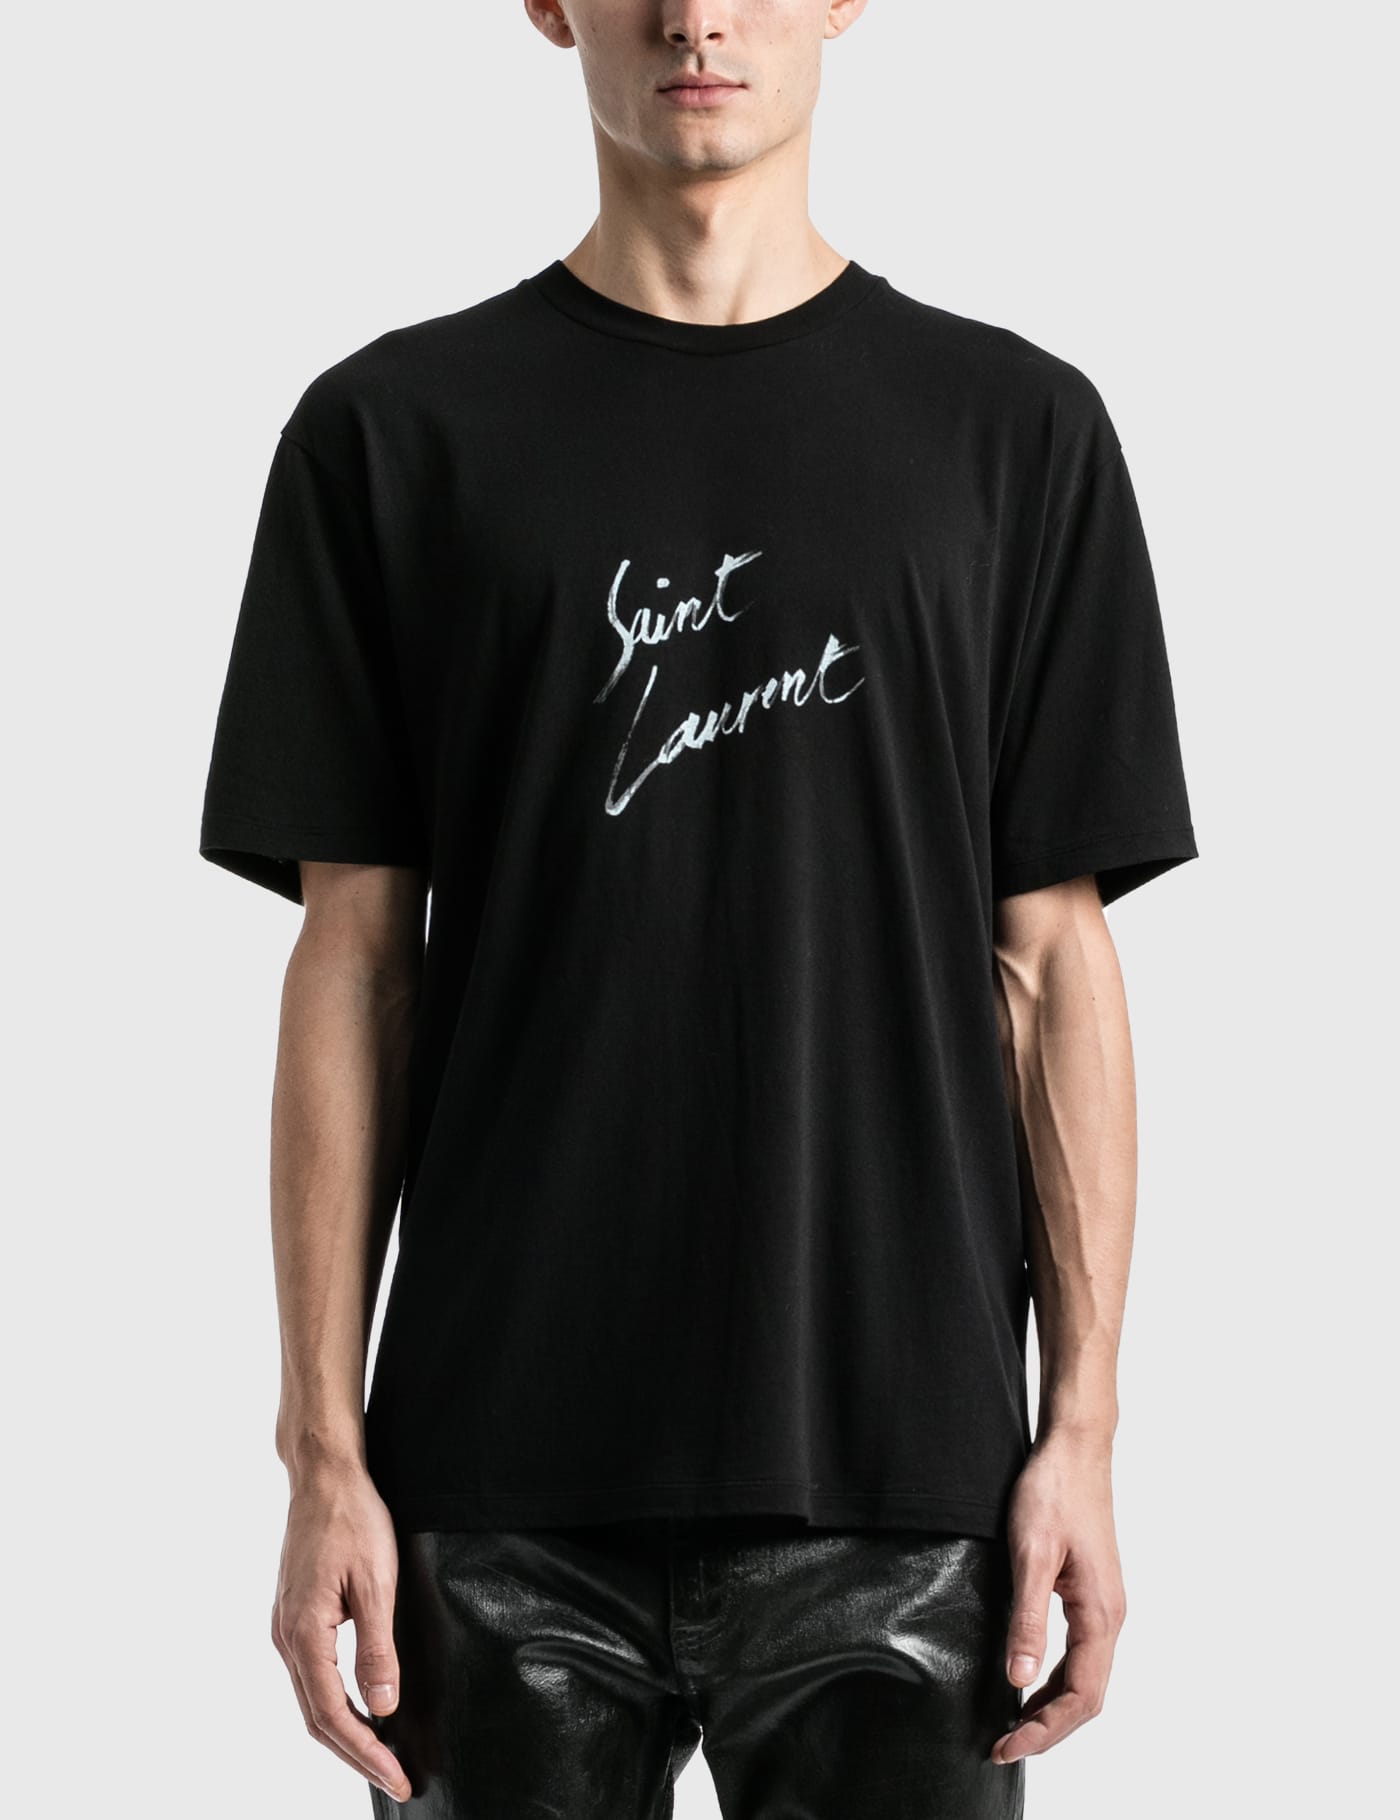 Saint Laurent - Saint Laurent Signature T-Shirt | HBX - Globally 